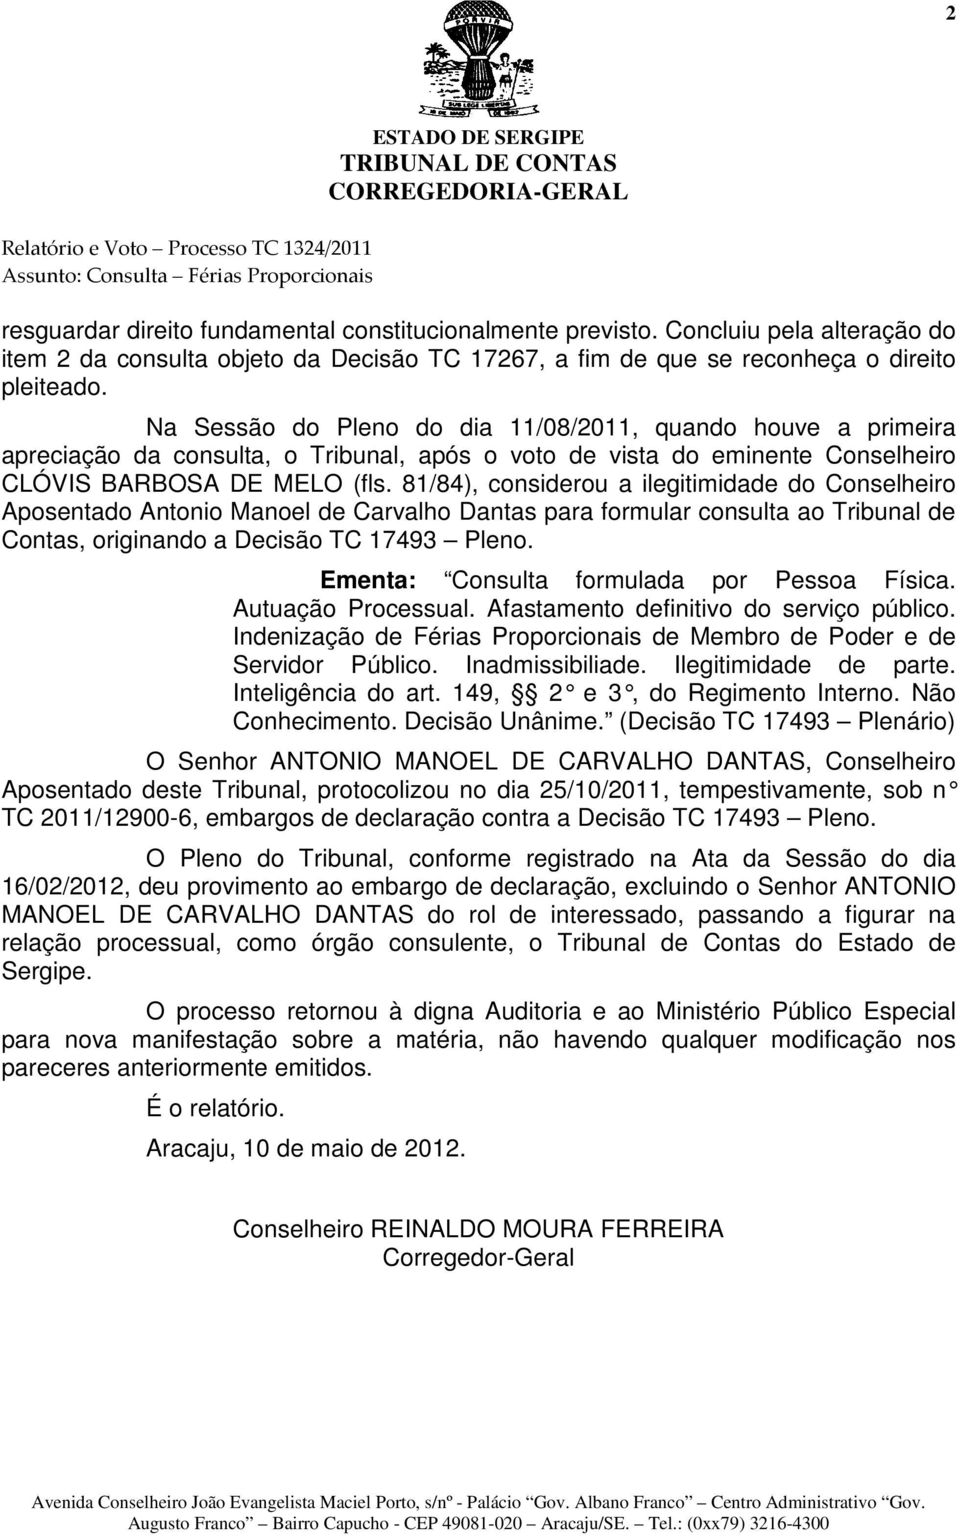 81/84), considerou a ilegitimidade do Conselheiro Aposentado Antonio Manoel de Carvalho Dantas para formular consulta ao Tribunal de Contas, originando a Decisão TC 17493 Pleno.